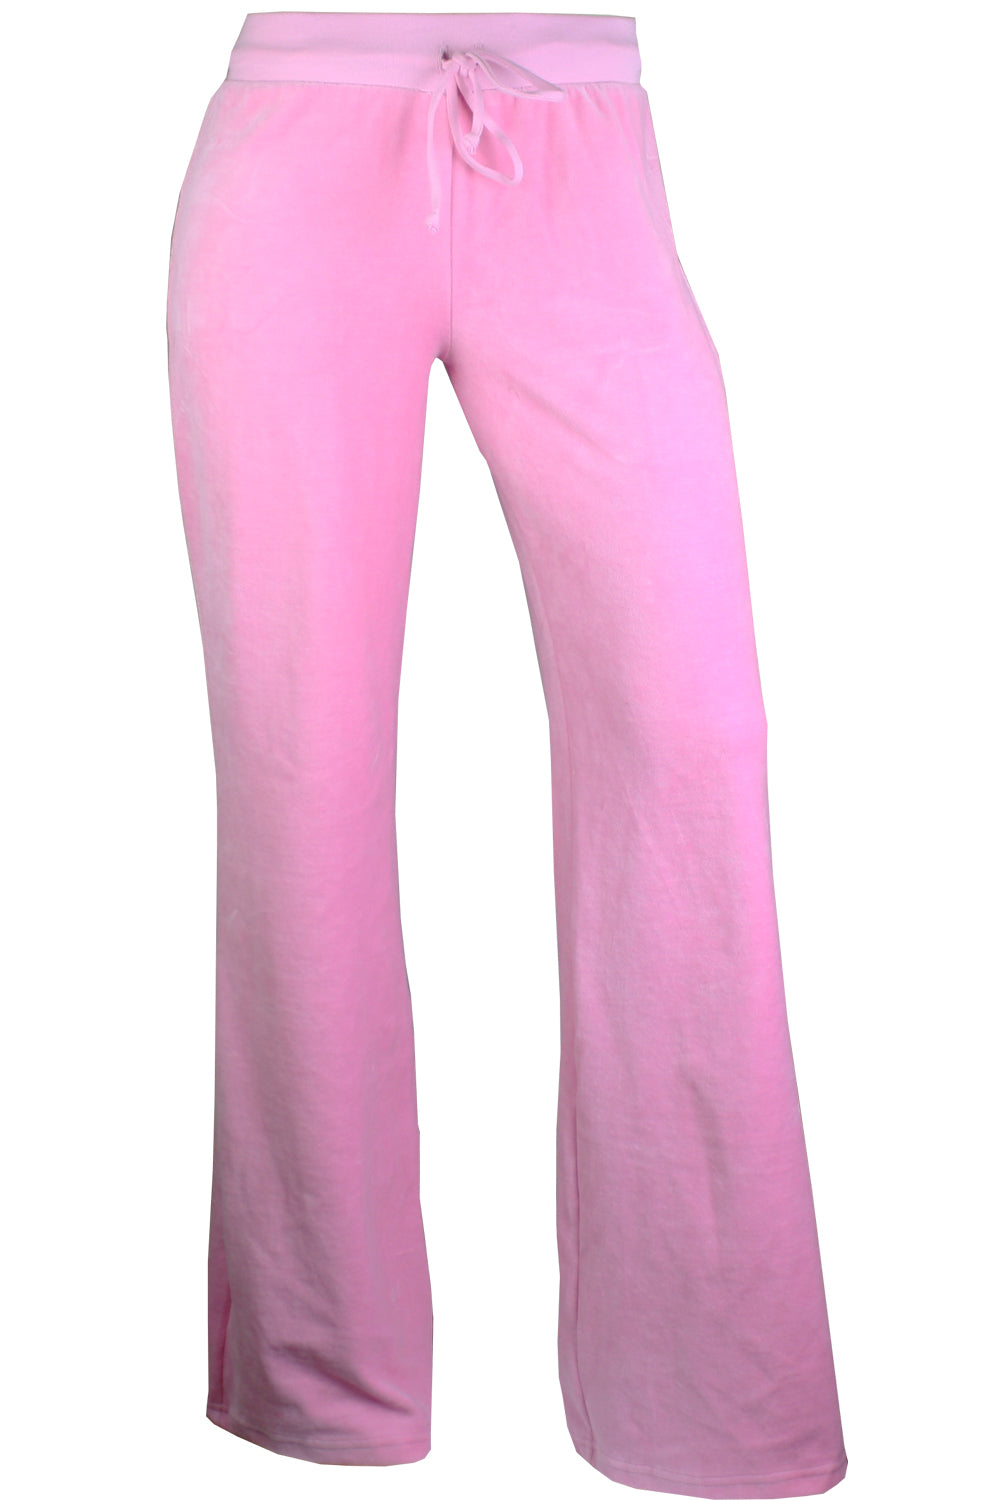 Loungewear Petite Low Rise Straight Leg Fleece Joggers in Baby Pink